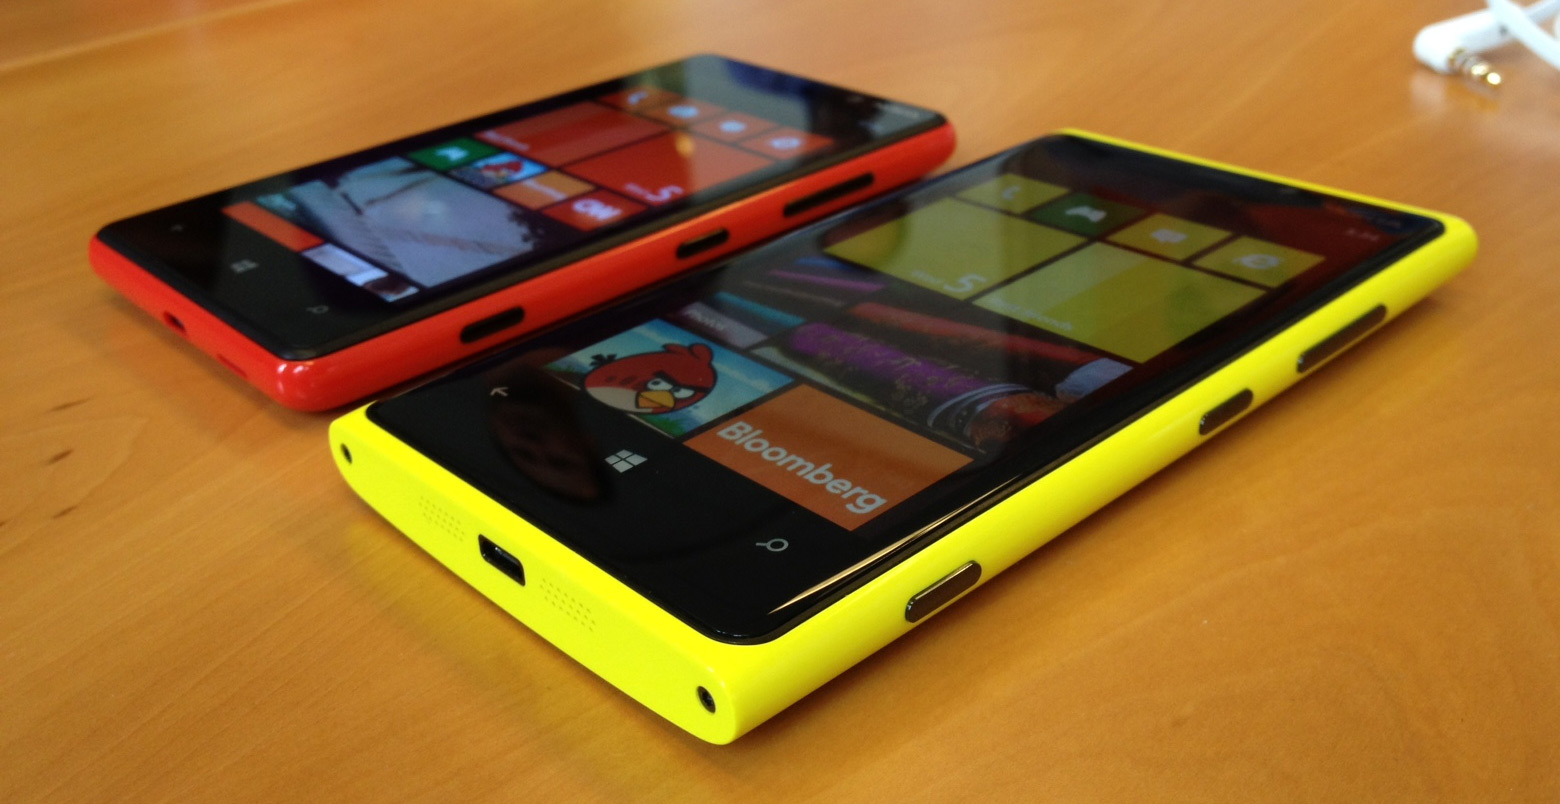 Nokia Lumia Mobile Image